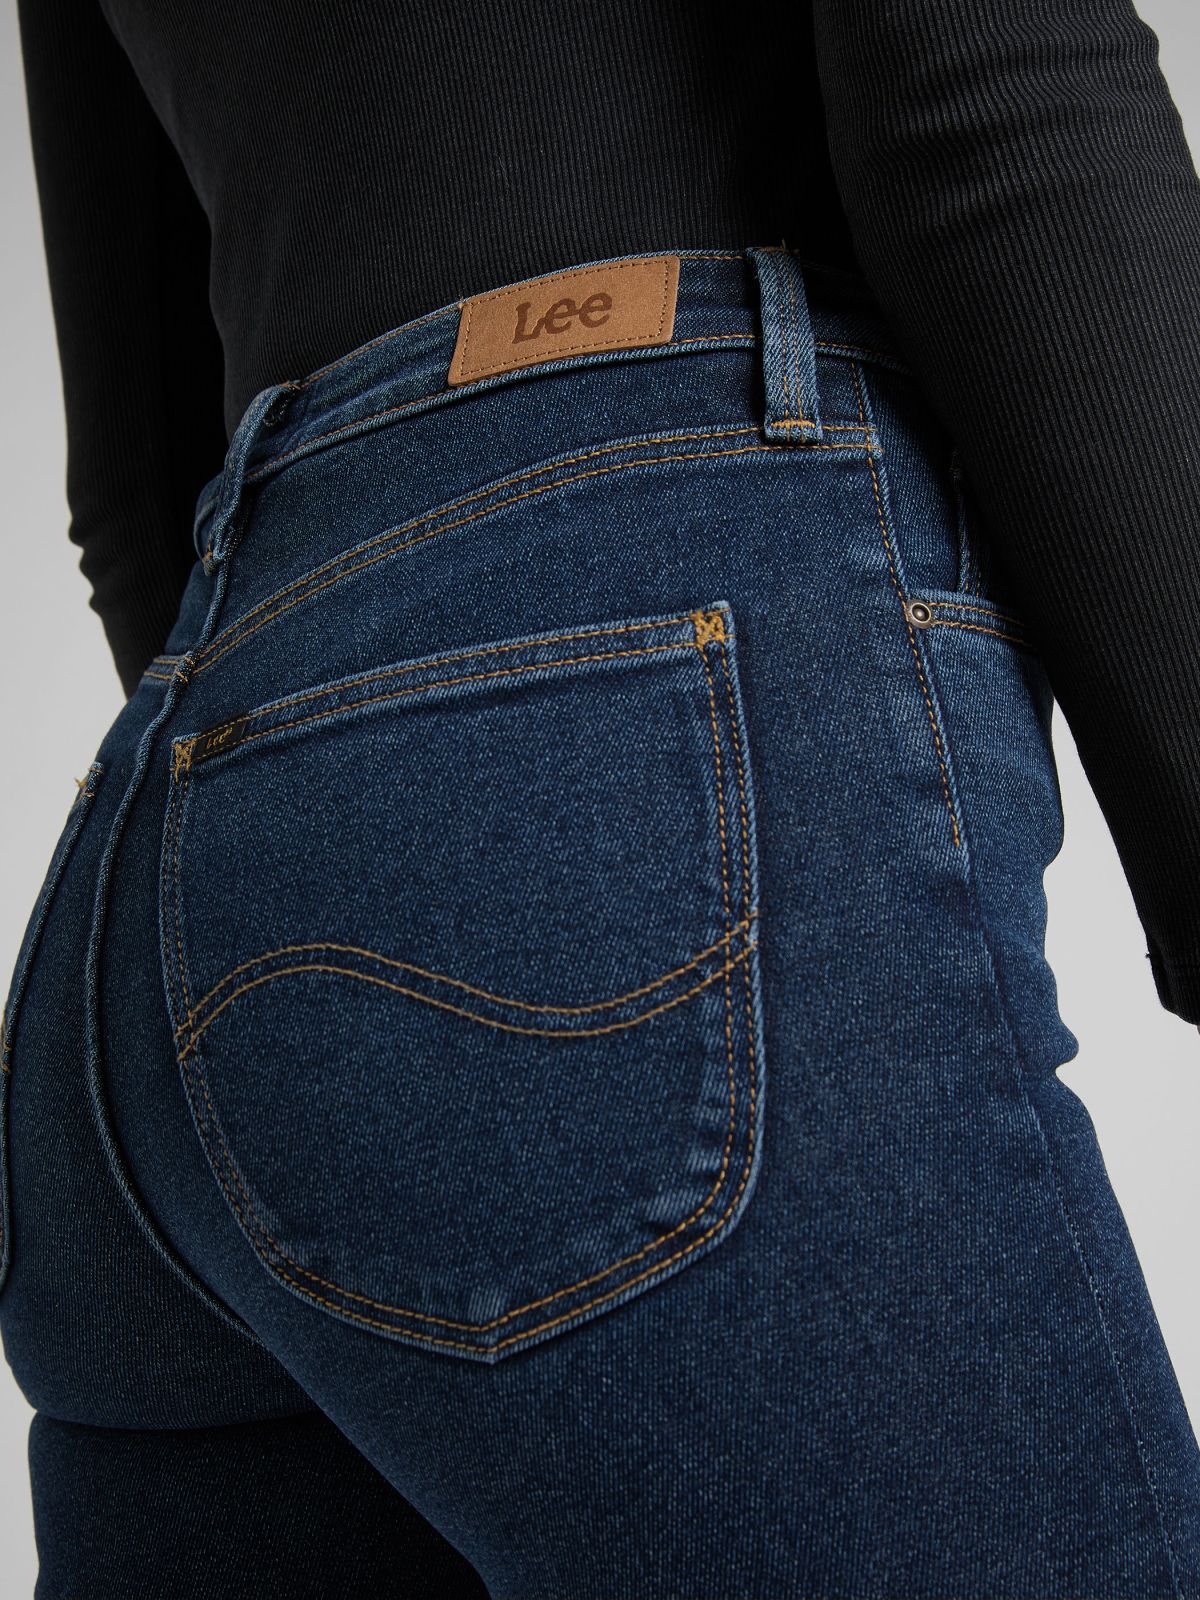  ג'ינס בגזרת סקיני IVY / נשים 	 של LEE